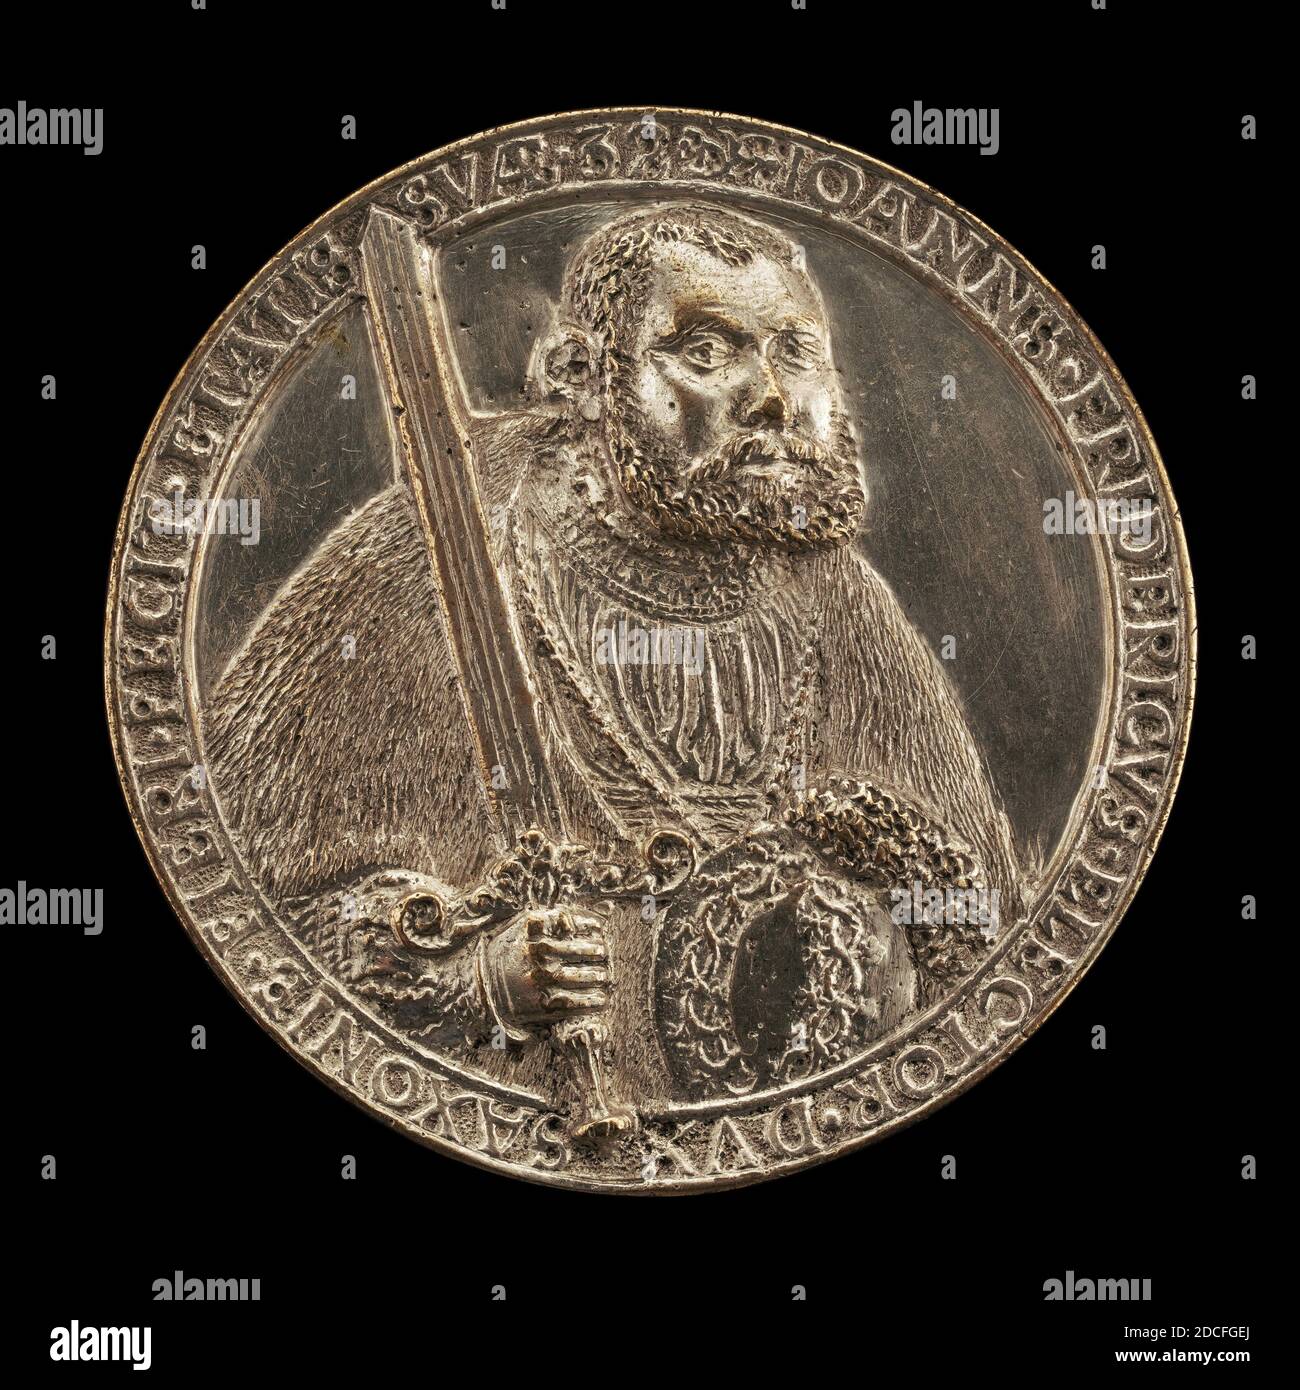 Hans Reinhart the Elder, (medalist), German, c. 1510 - 1581, Johann Friedrich, 1503-1554, Elector of Saxony 1532, 1535, silver, overall (diameter): 6.51 cm (2 9/16 in.), gross weight: 66.65 gr (0.147 lb.), axis: 12:00 Stock Photo